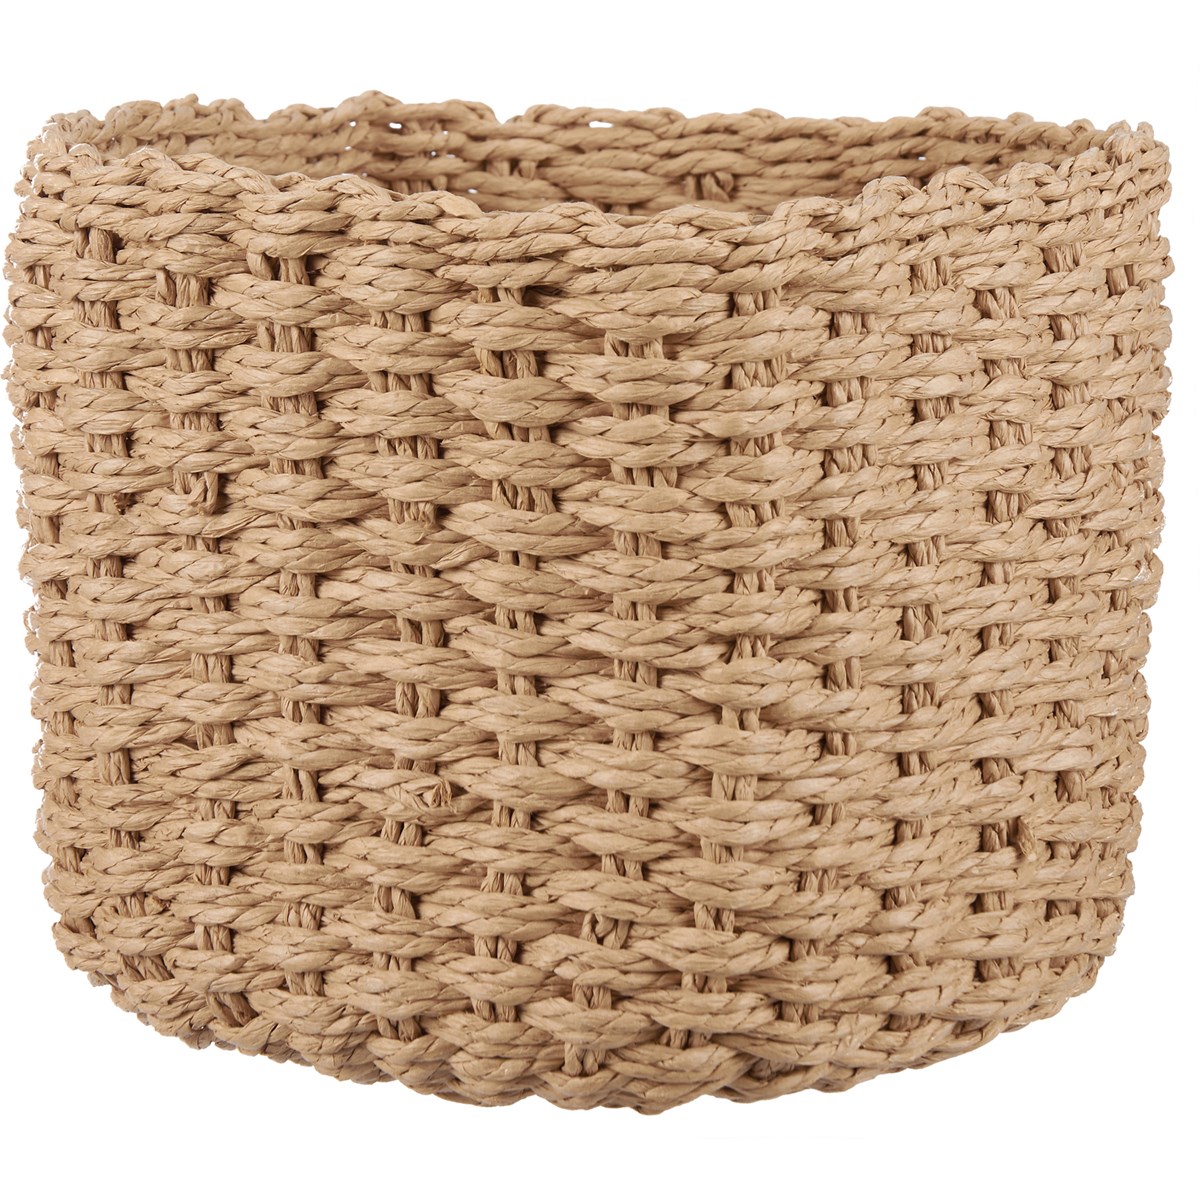 Round Paper Rope Basket Set - Paper, Metal